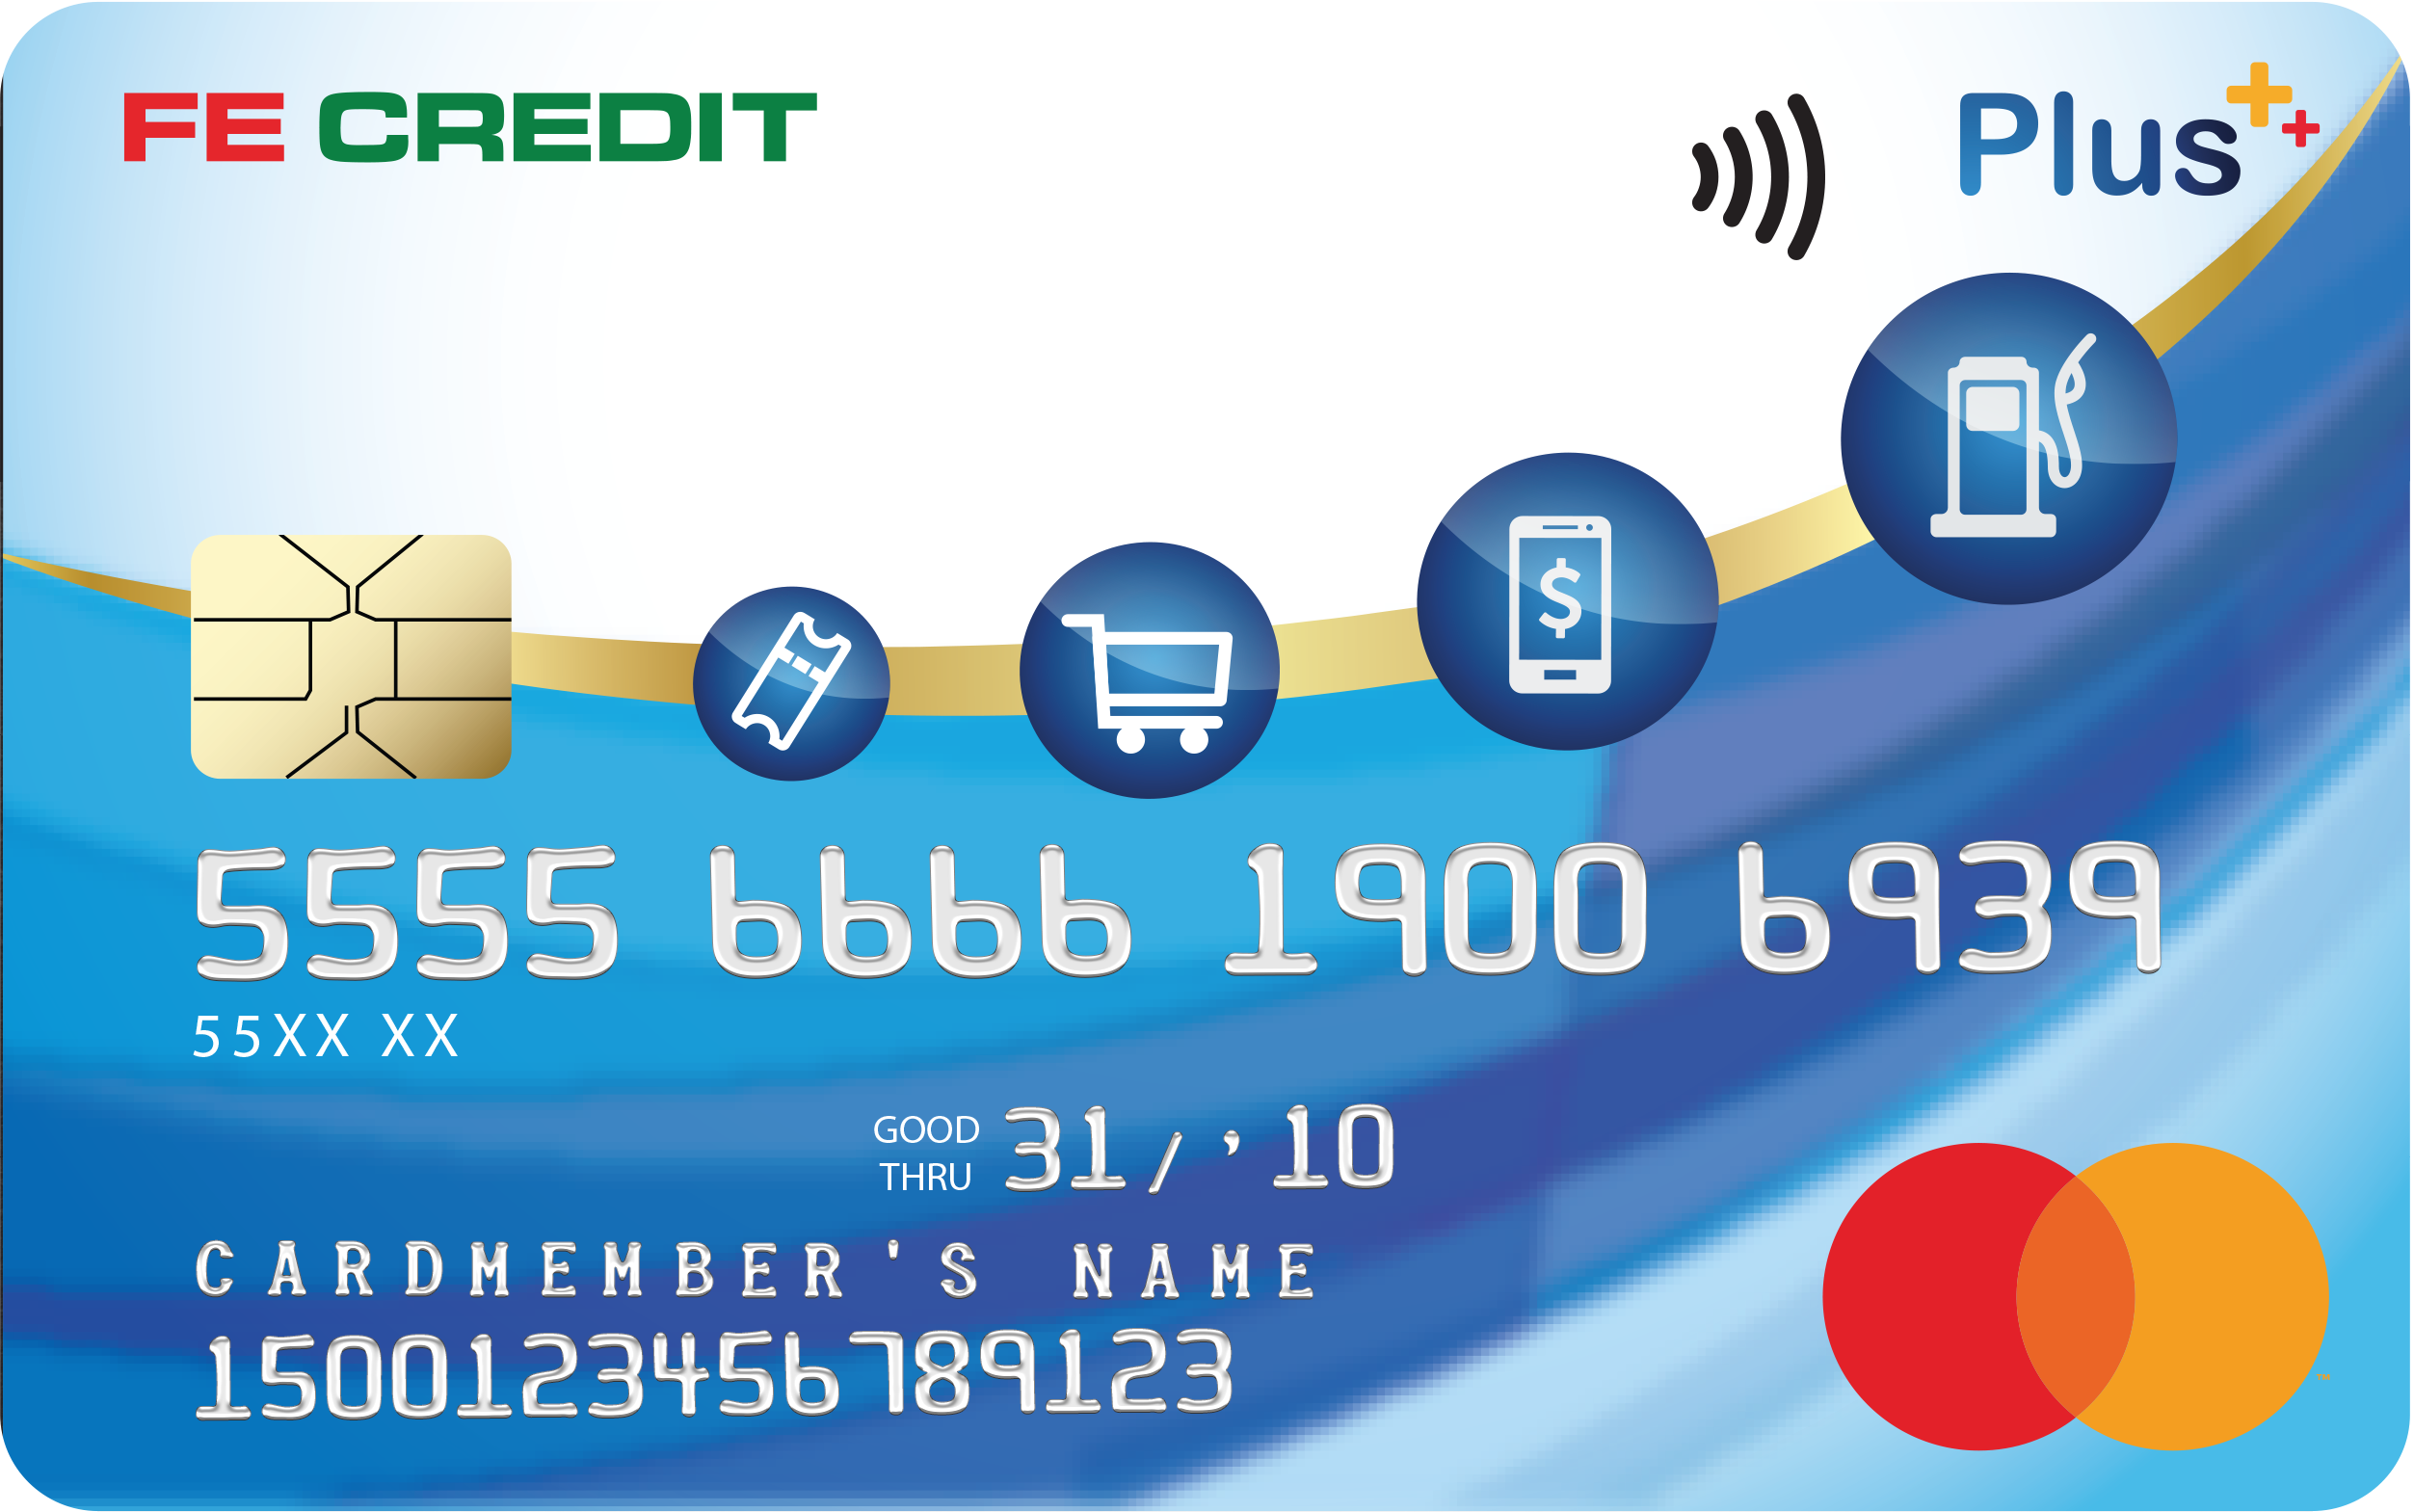 Hướng dẫn tra cứu thẻ tín dụng Fe Credit nhanh, đơn giản nhất